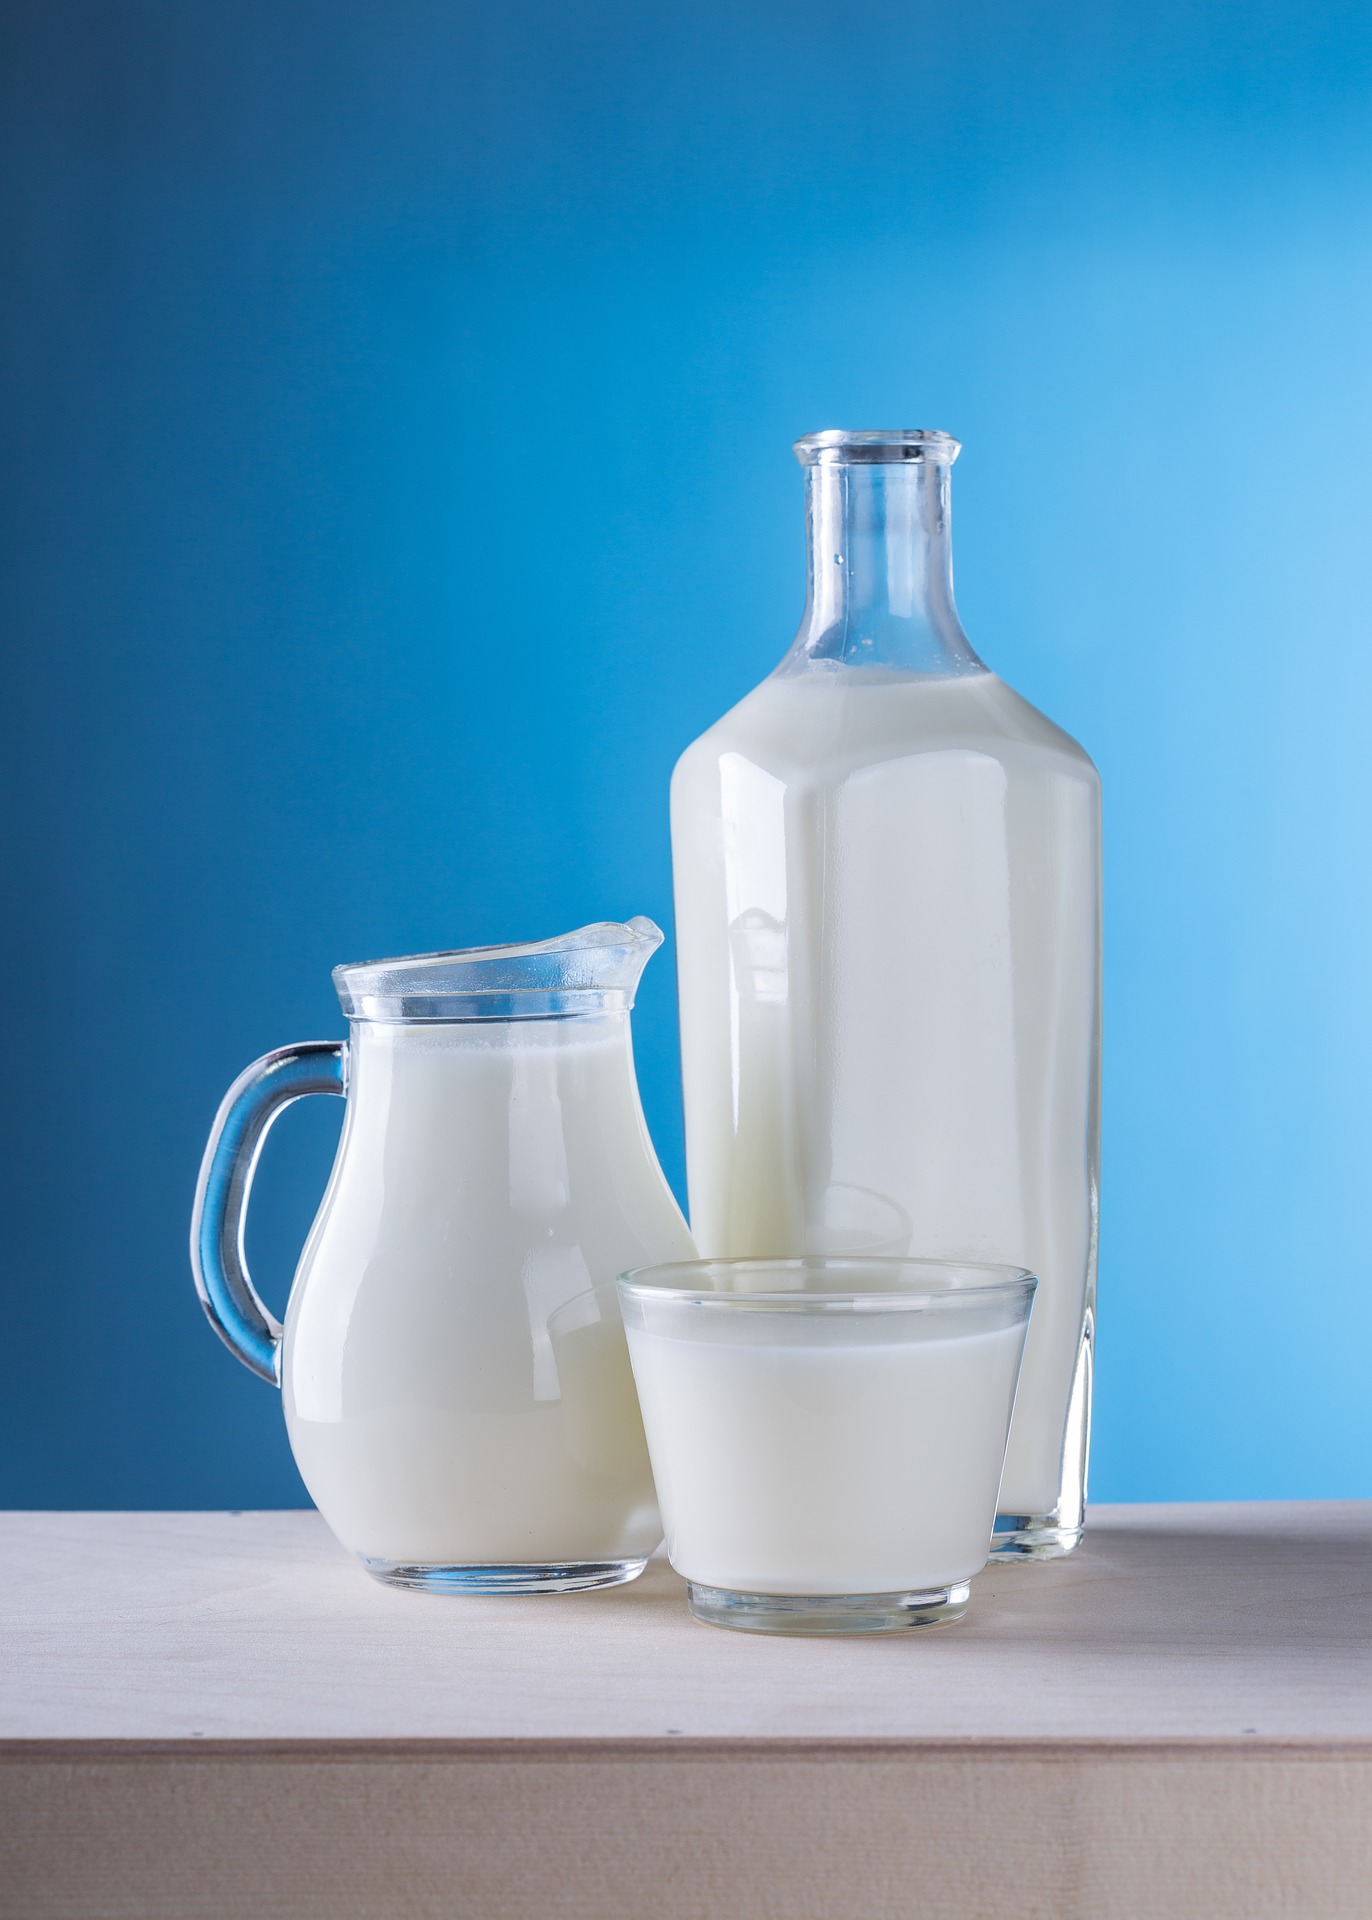 Hamuje spadek cen produktów mlecznych